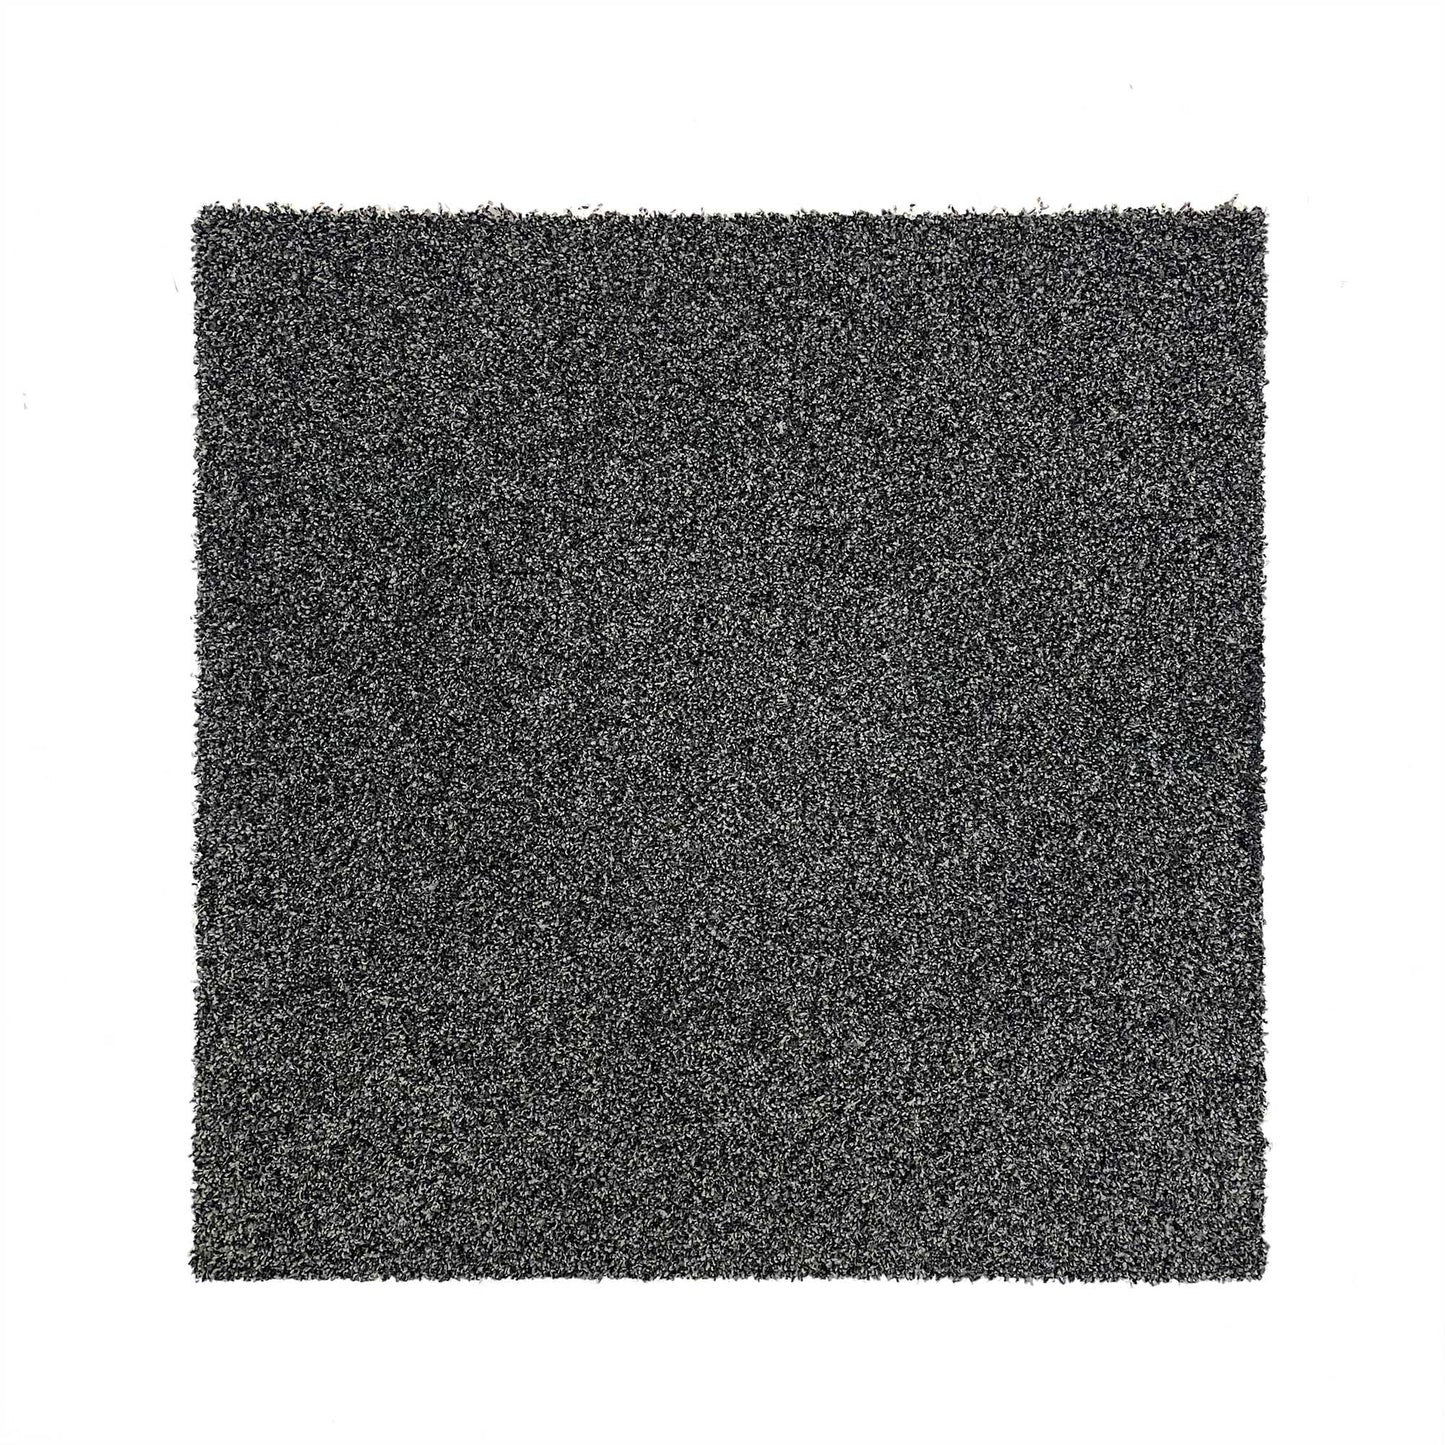 Graphite Grey - Cut Pile Carpet Tile